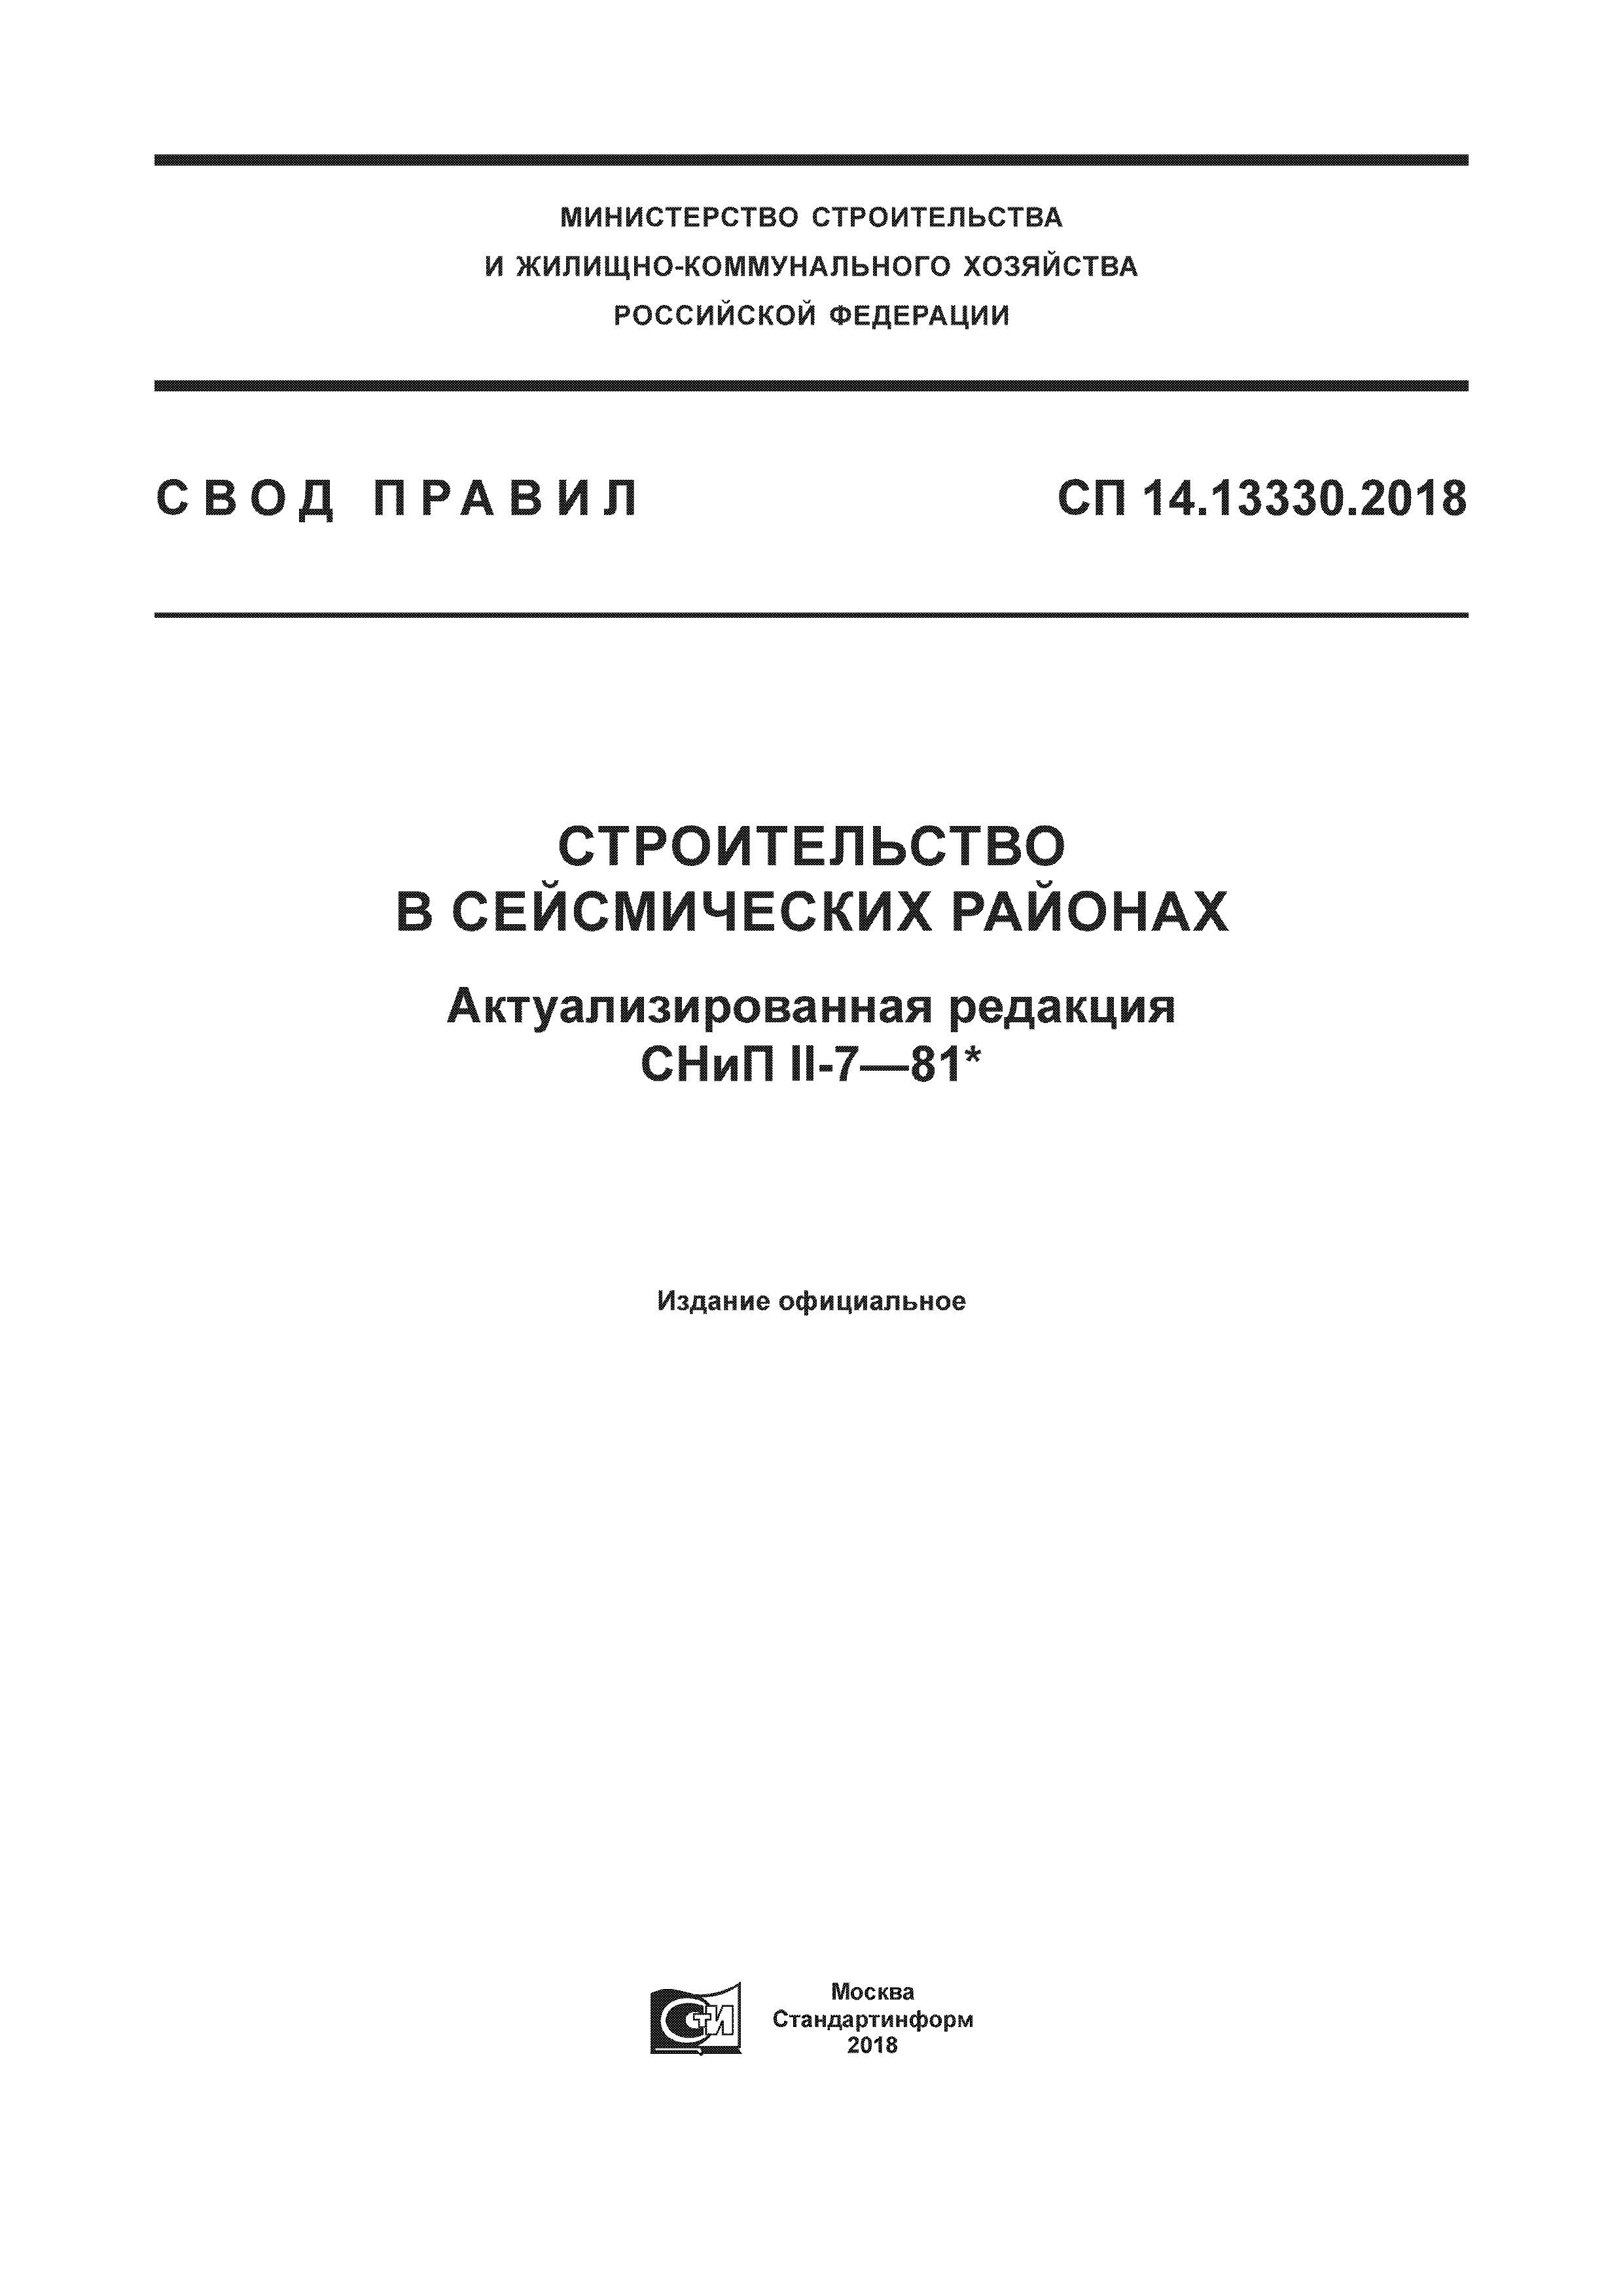 СП 14.13330.2018